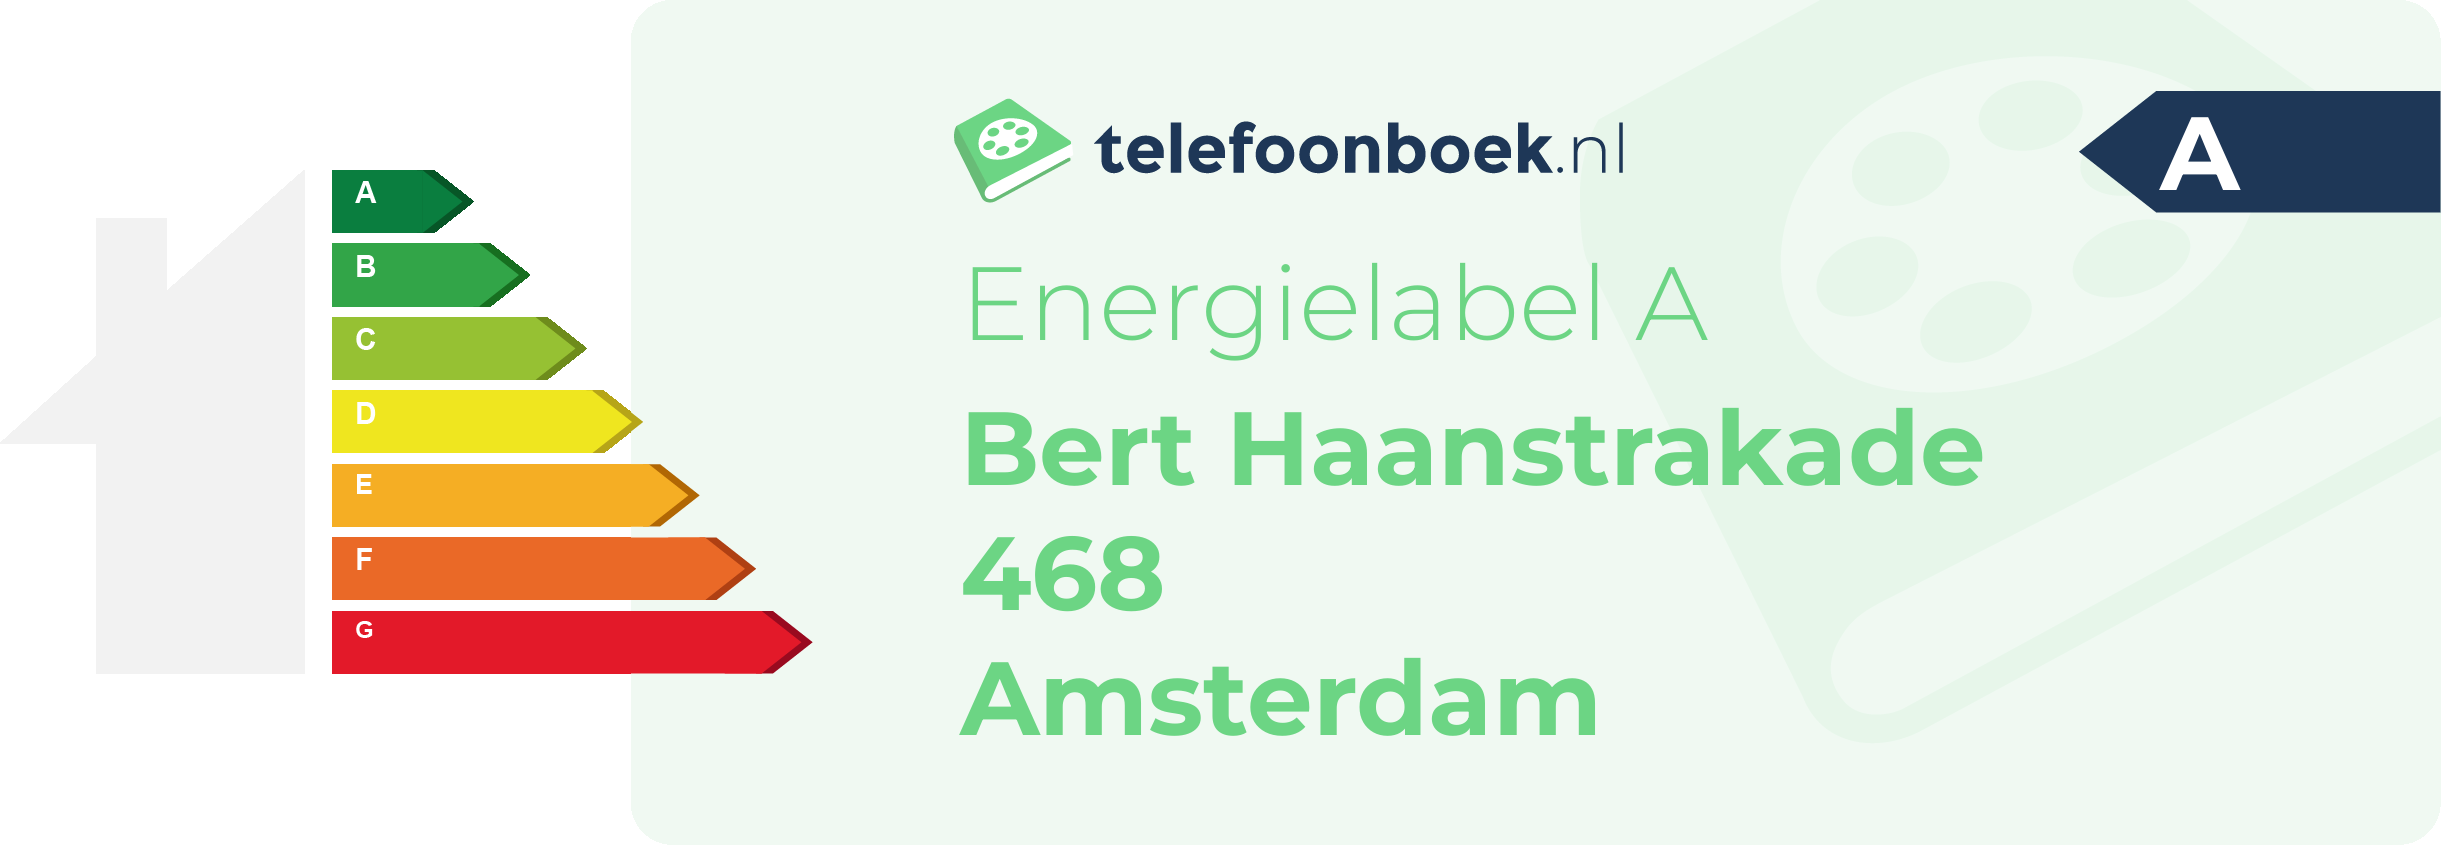 Energielabel Bert Haanstrakade 468 Amsterdam